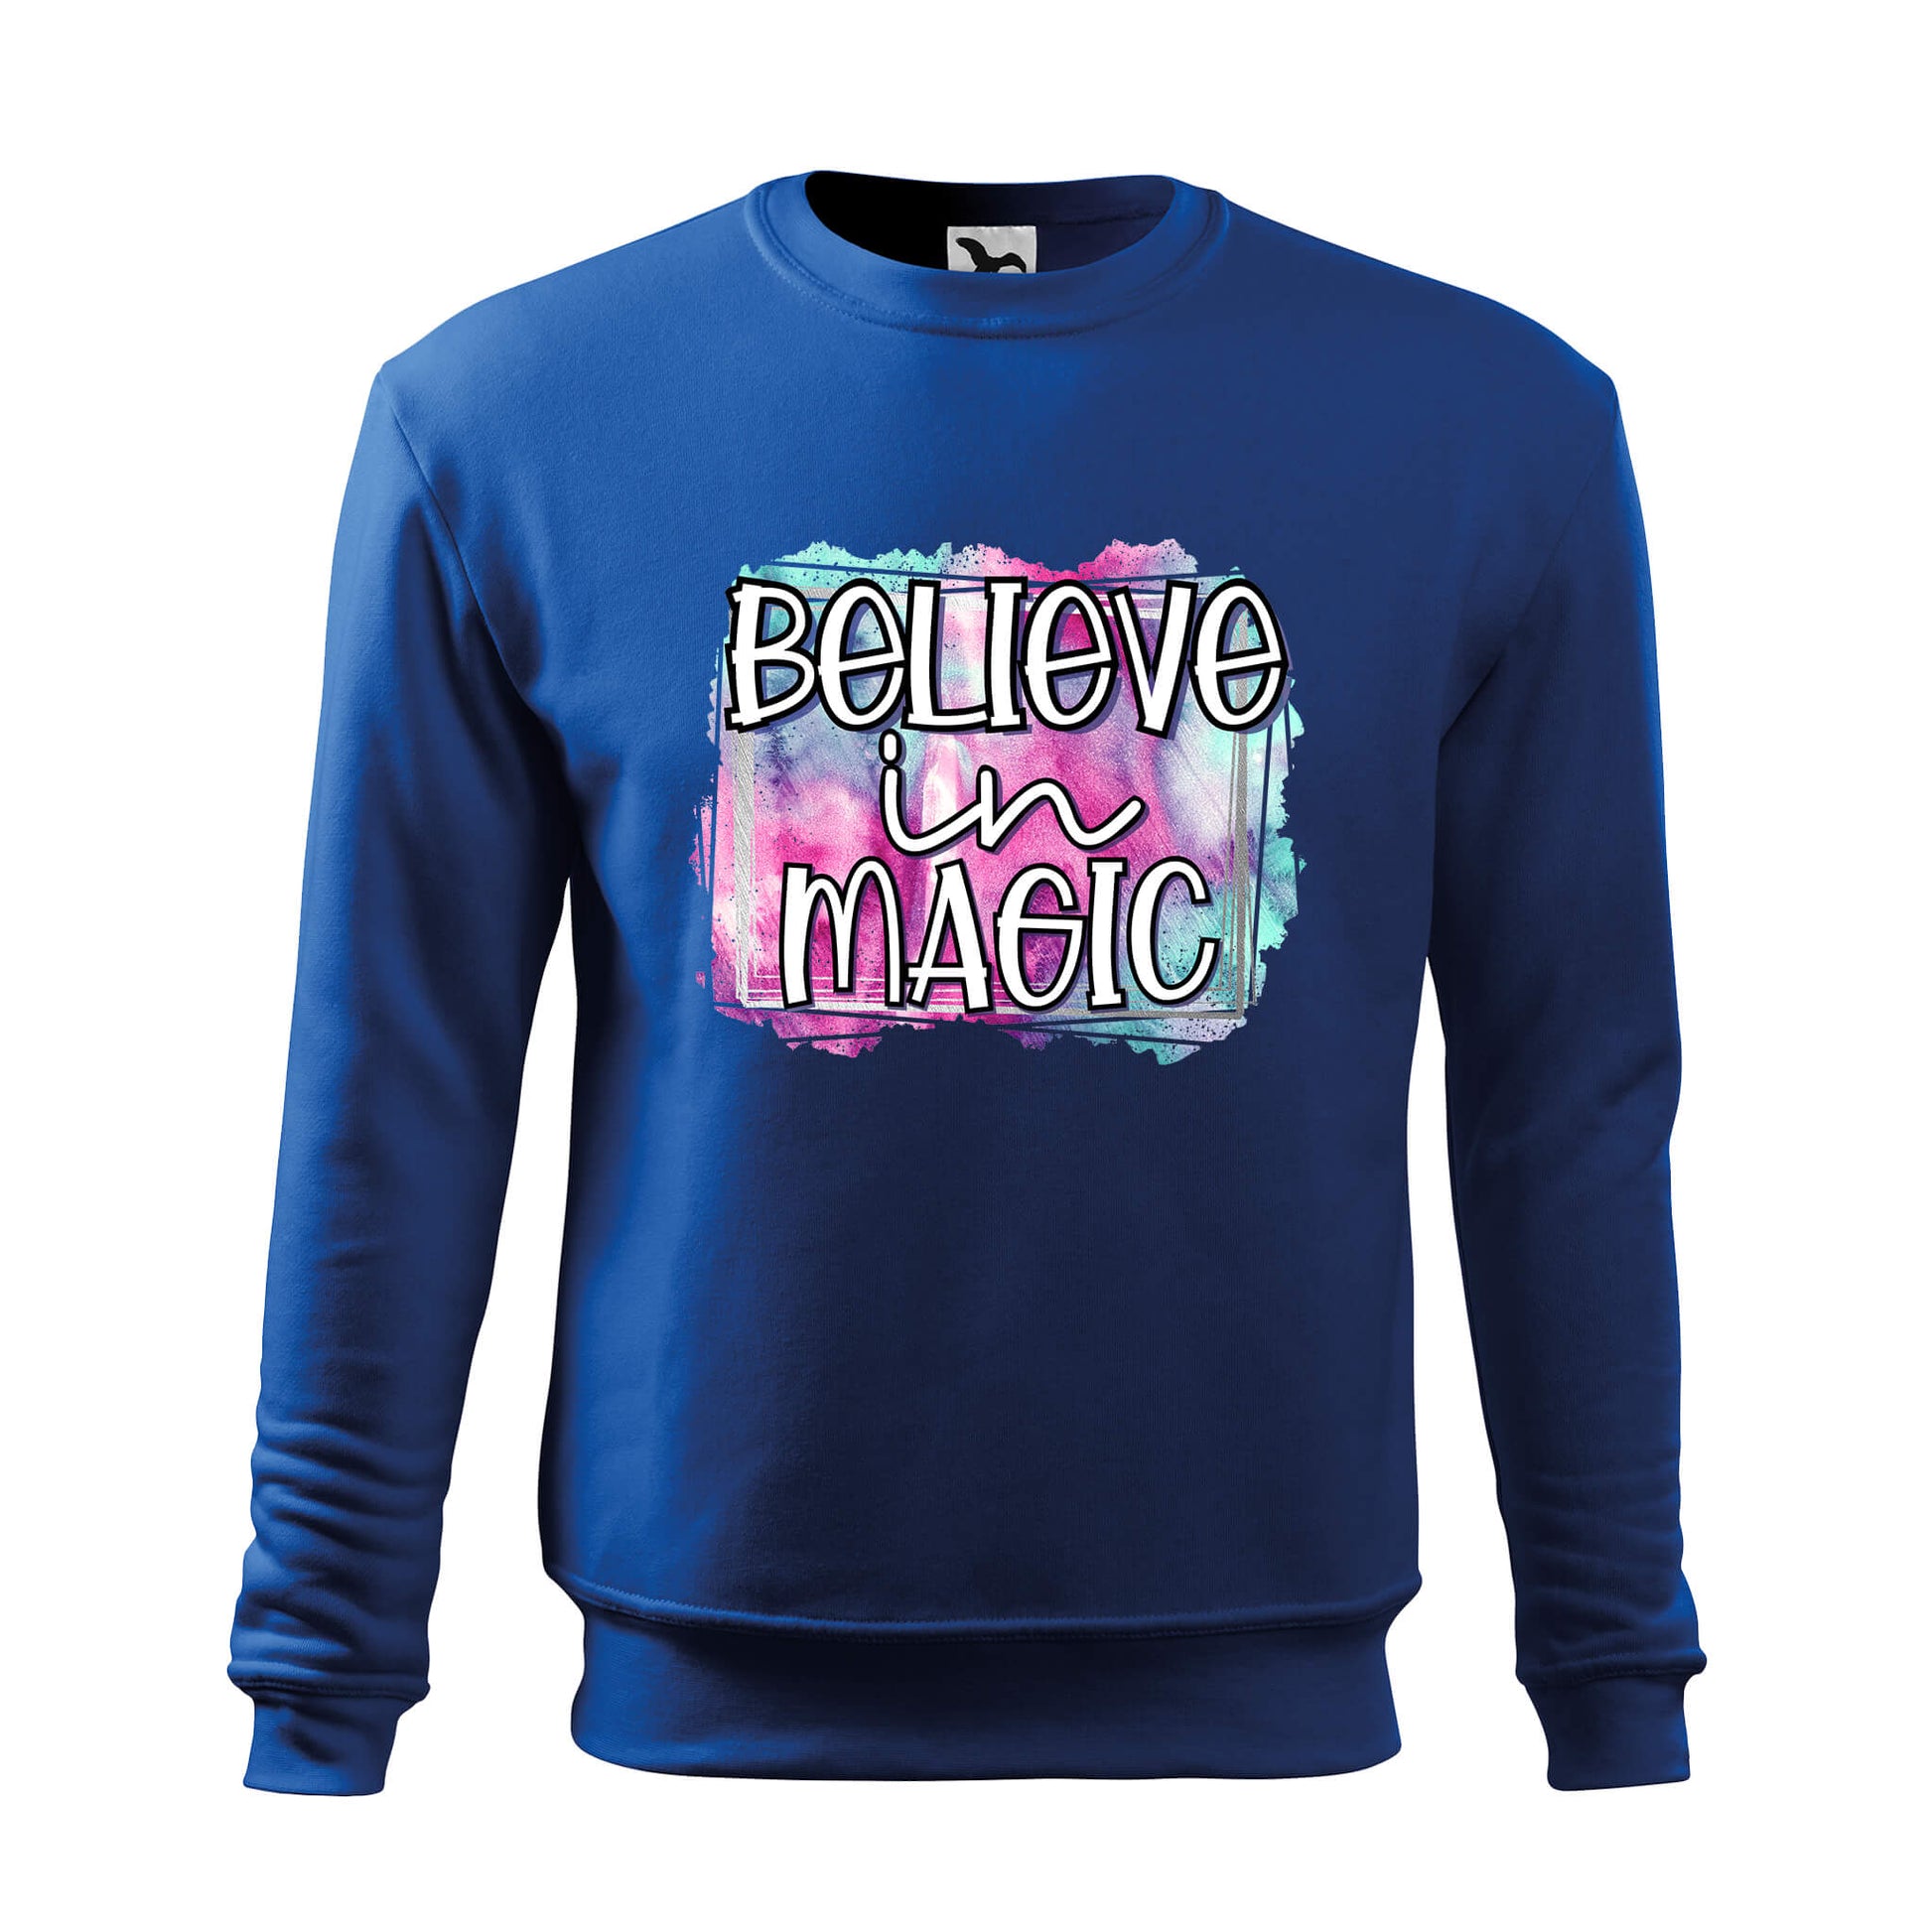 Believe in magic sweatshirt - rvdesignprint